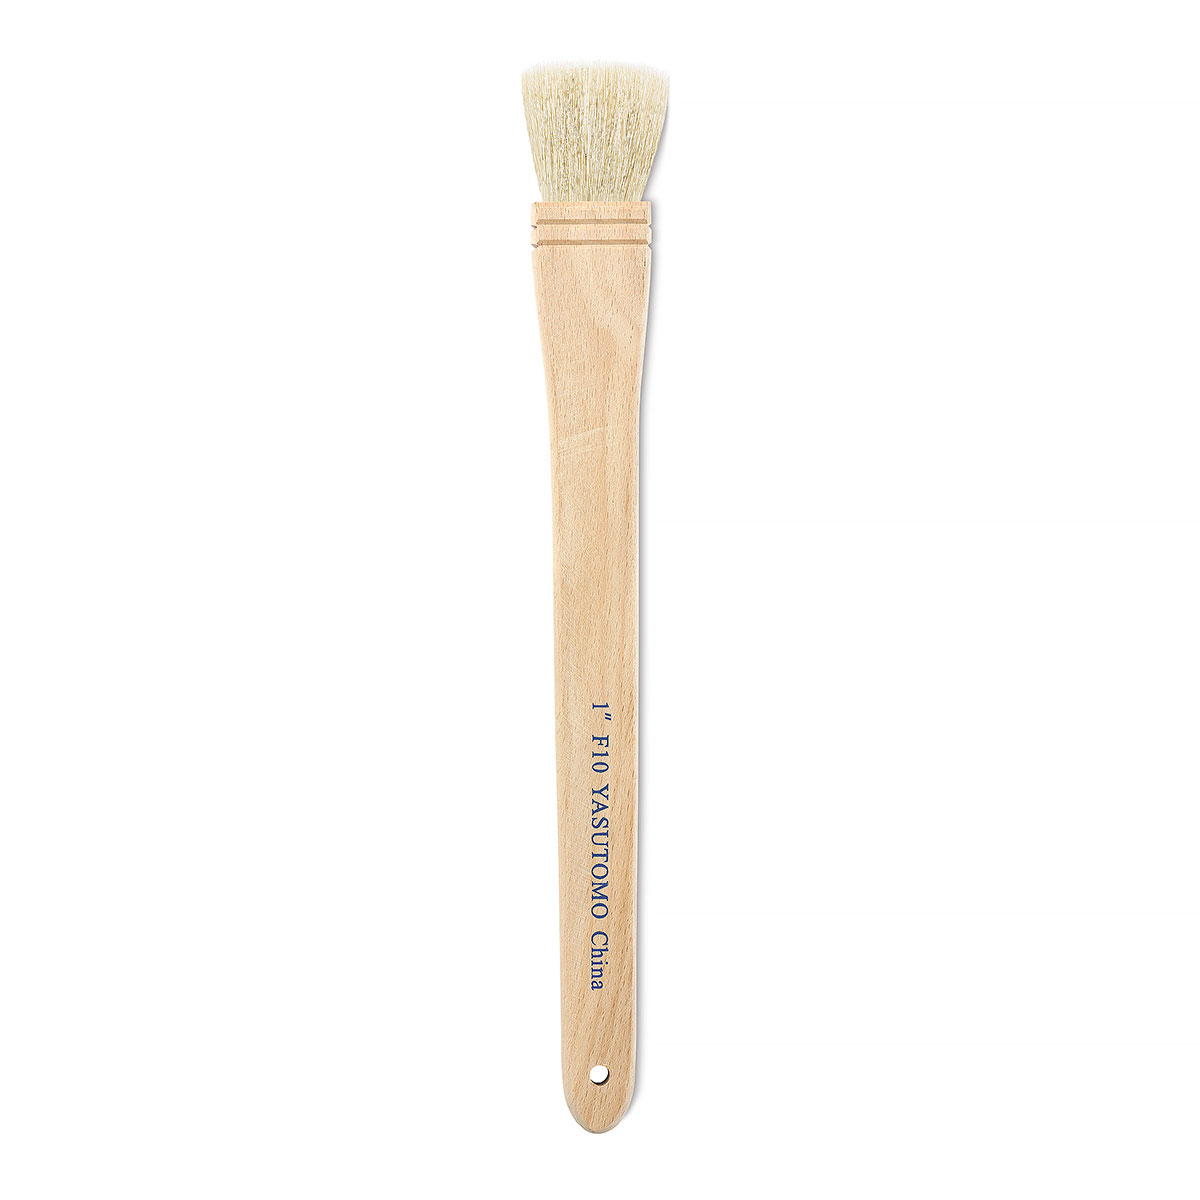 Yasutomo 1 Sheep Hair Hake Brush